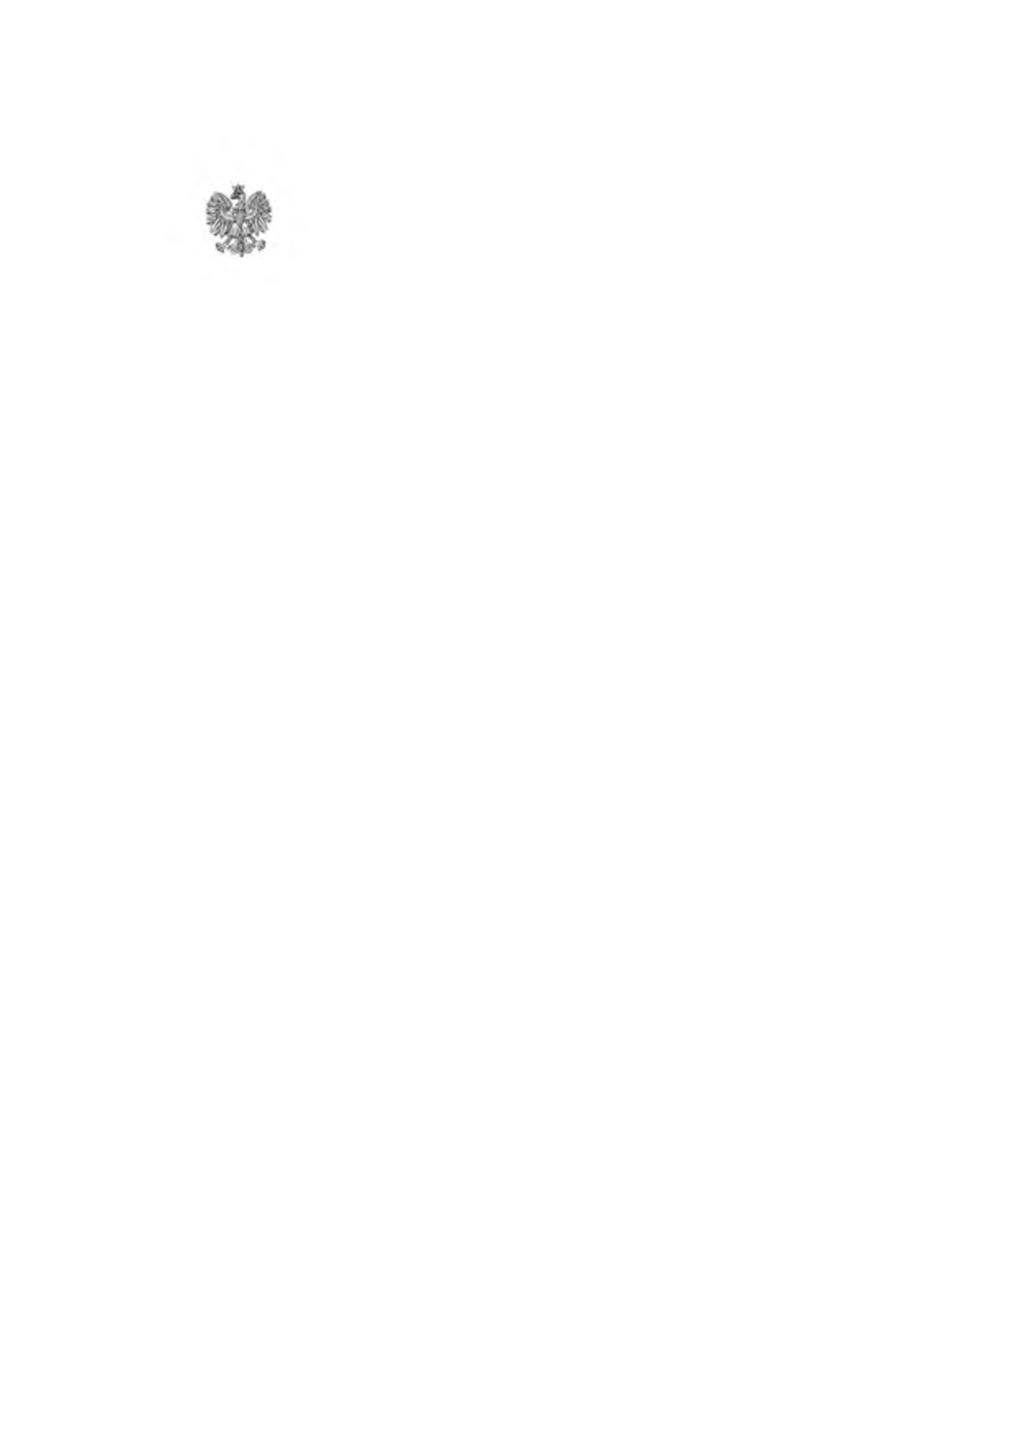 WOJEWODA DOLNOŚLĄSKI Wrocław, dnia 12 sierpnia 2015 r. NK-KS.431.1.24.2015.MK Pani Sylwia Dąbrowska Przewodnicząca Rady Miejskiej w Boguszowie - Gorcach Wystąpienie pokontrolne Na podstawie art.